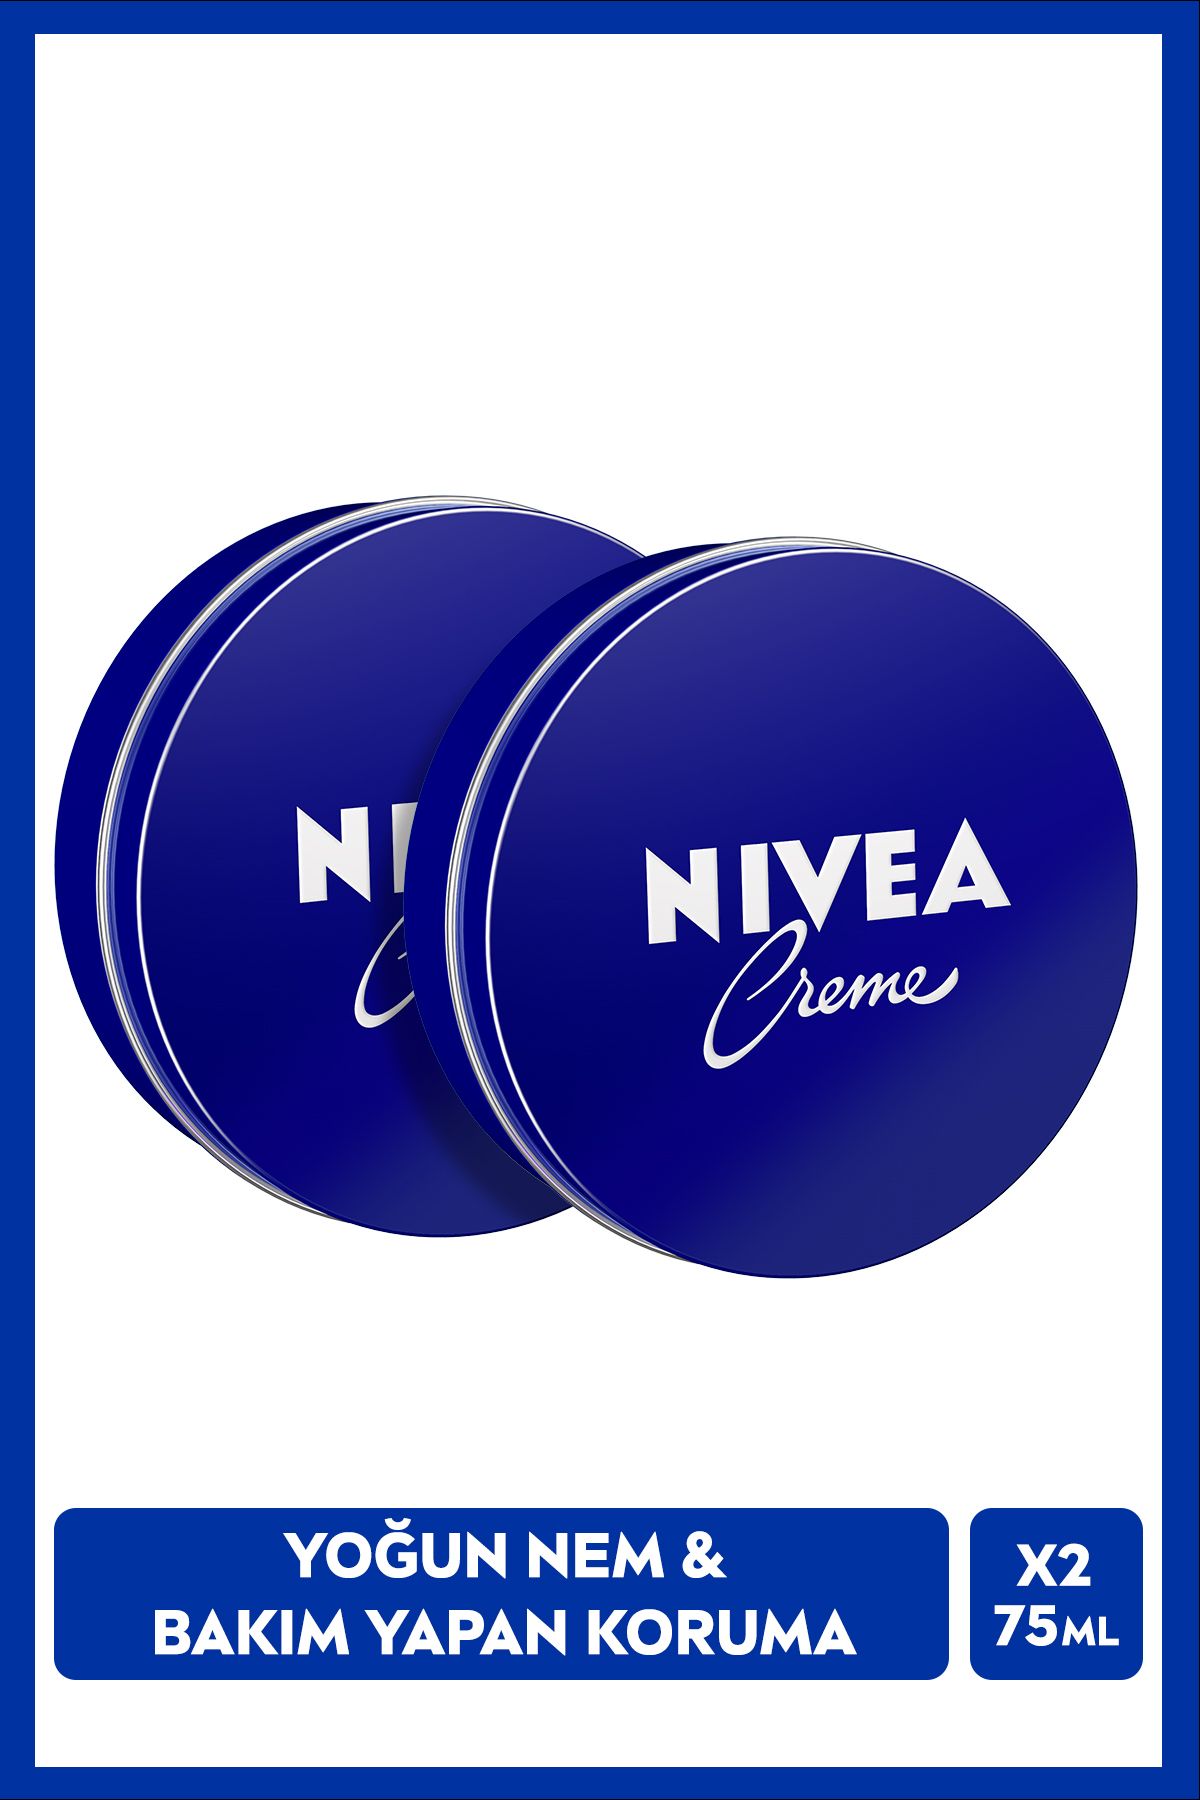 NIVEA Creme 75ml, Bakım Yapan Koruma, Uzun Süreli Yoğun Nemlendirici, El Yüz ve Vücut, X2 Adet